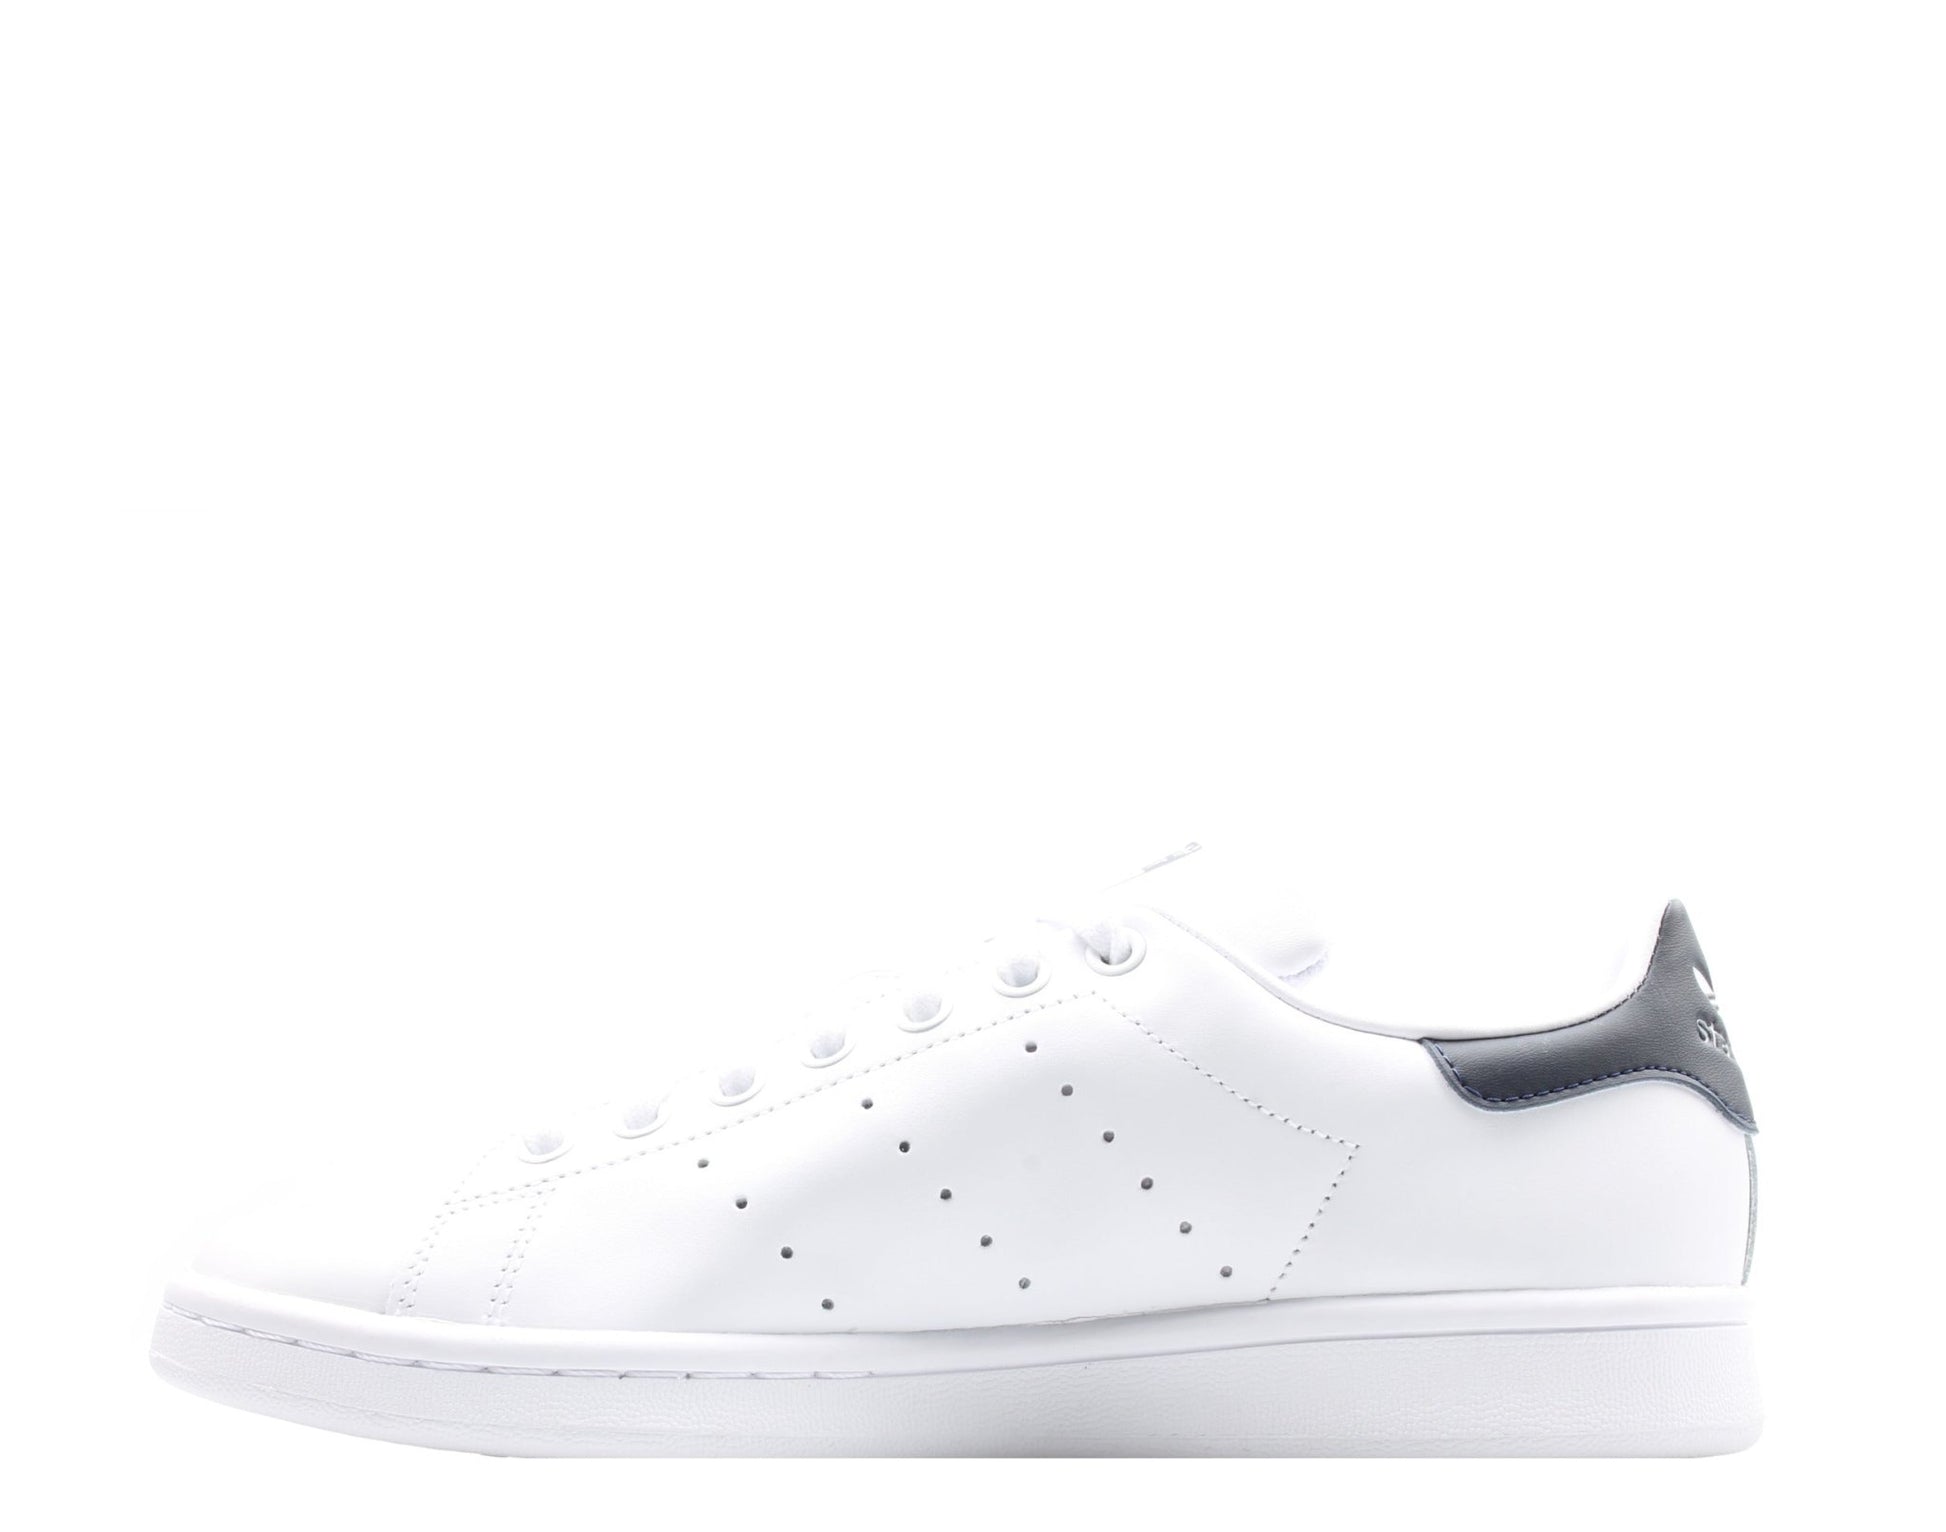 Adidas Originals Stan Smith White/Dark Blue OG Men's Tennis Shoes M20325 - Becauze